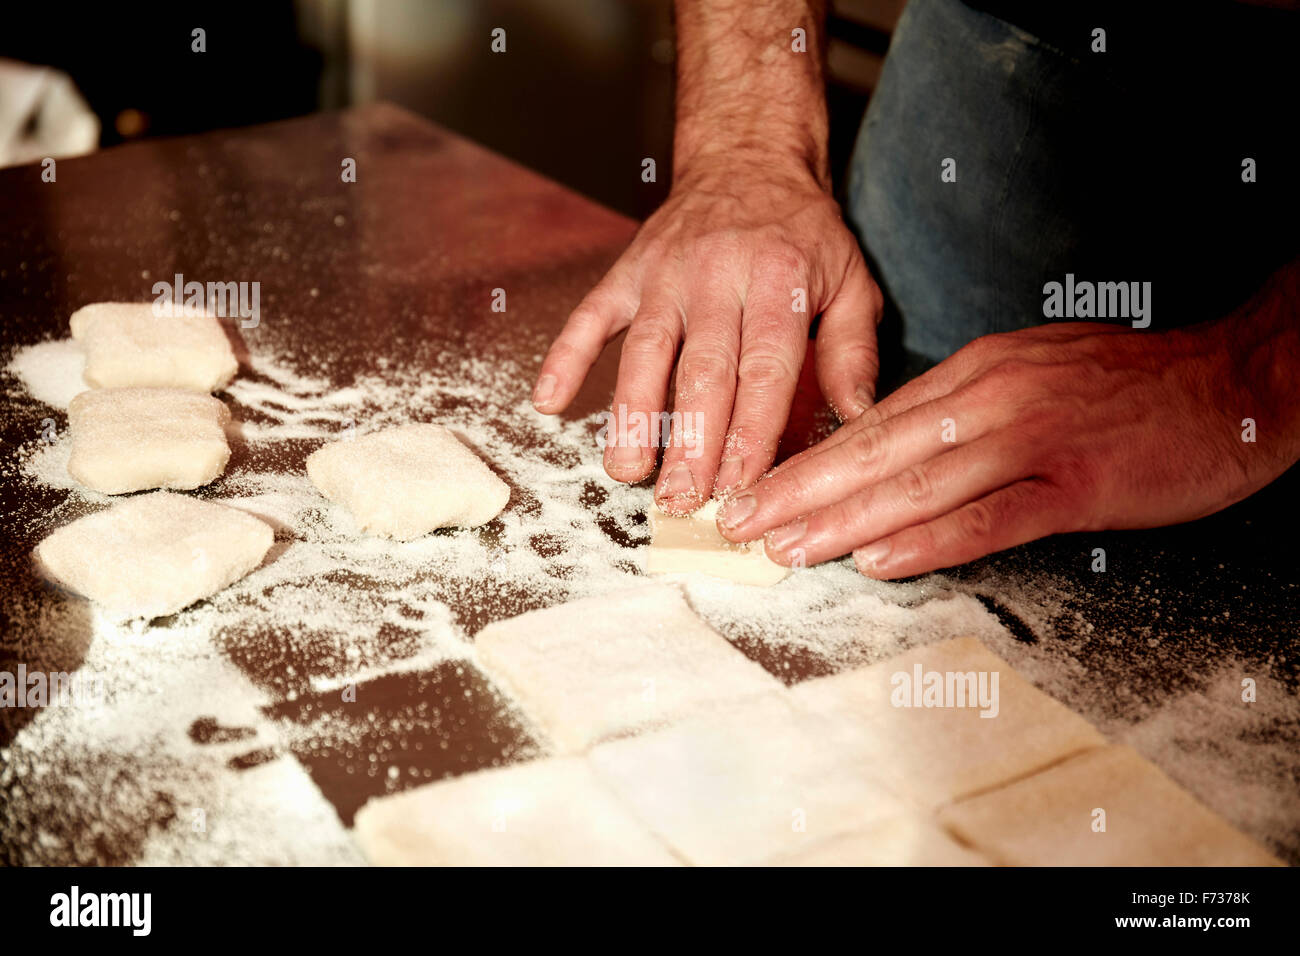 Un panadero trabaja sobre una superficie enharinada, dividiendo la masa preparada en forma de cuadrados. Foto de stock